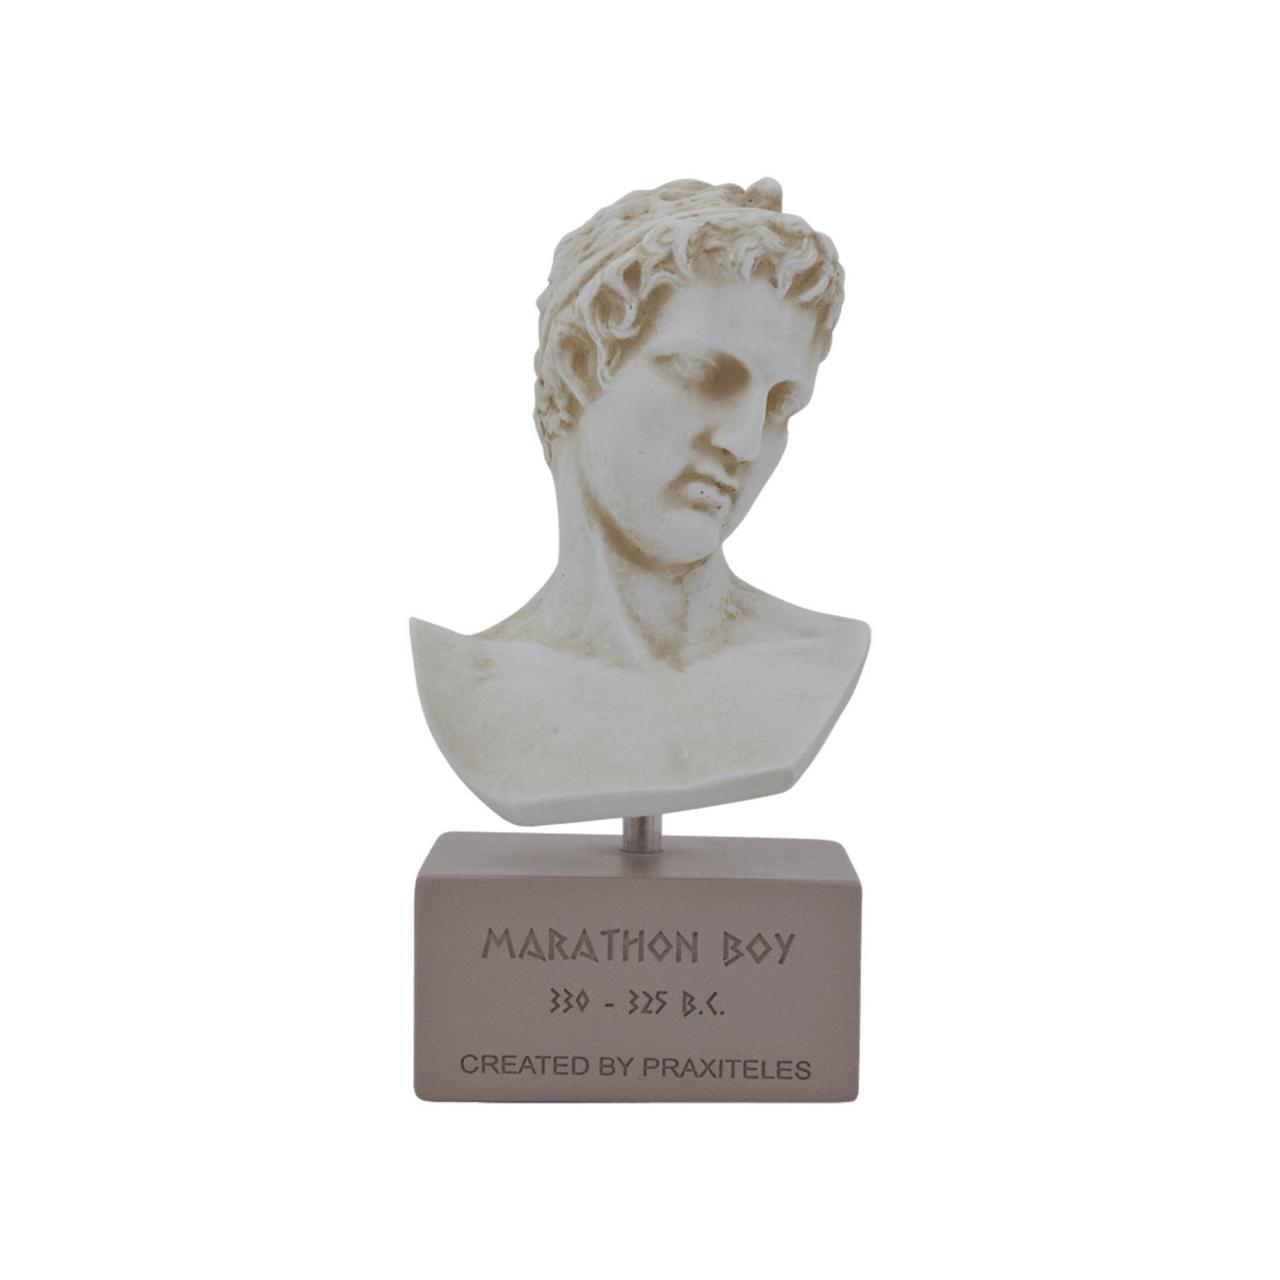 The Marathon Boy Bust Head Sculpture - Ancient Greek Handmade Alabaster Red Statue 18cm - 7.09"